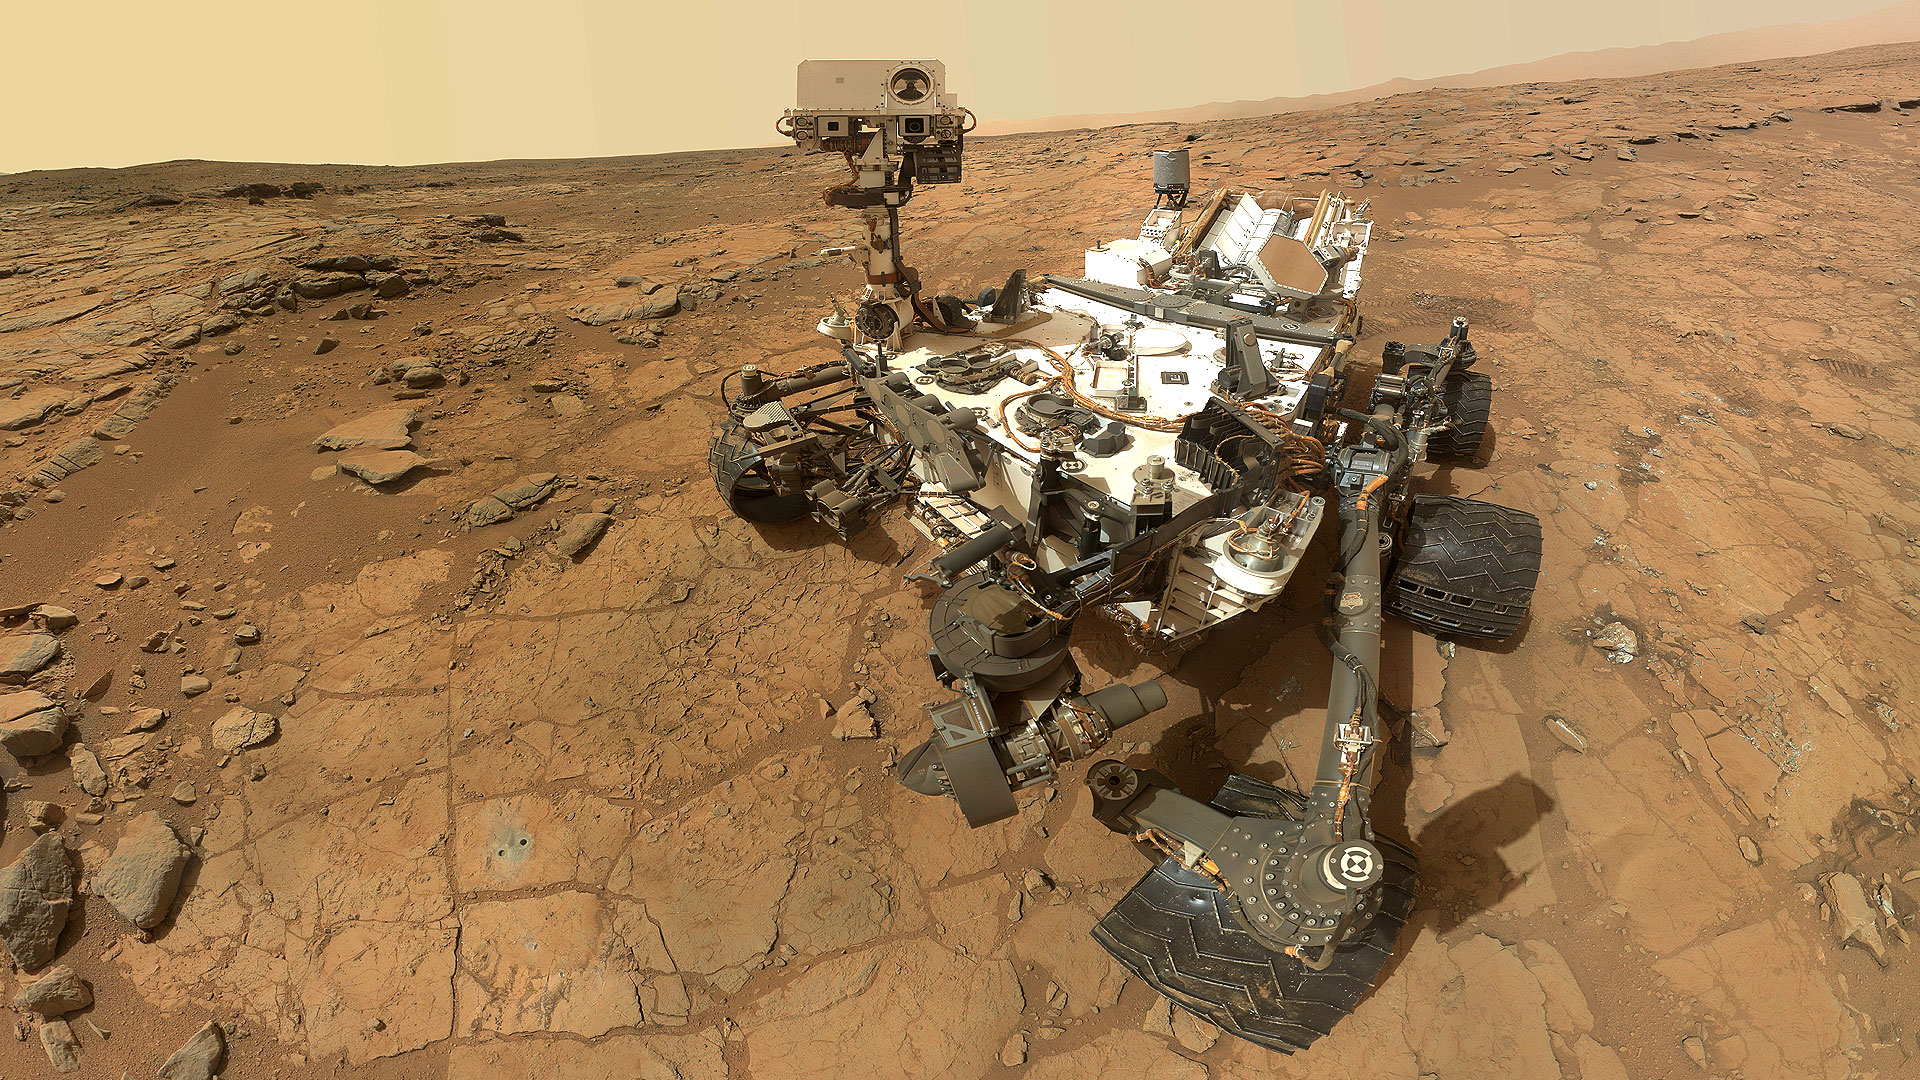 Curiosity : emplacement des caméras. Emplacement des caméras sur le rover. Sept caméras se trouvent sur le mât de Curiosity : 4 caméras en noir et blanc, 2 en couleurs (Mastcam) et RMI (Remote Micro Imager). À l’extrémité du bras robotisé se trouve Mahli (Mars Hand Lens Imager) qui doit réaliser des clichés du sol martien. D’autres caméras (Hazcams : Hazards-Avoidance Cameras) sont destinées à l’évitement des dangers. À l’arrière du rover : Mardi (Mars Descent Imager). © Nasa, JPL-Caltech